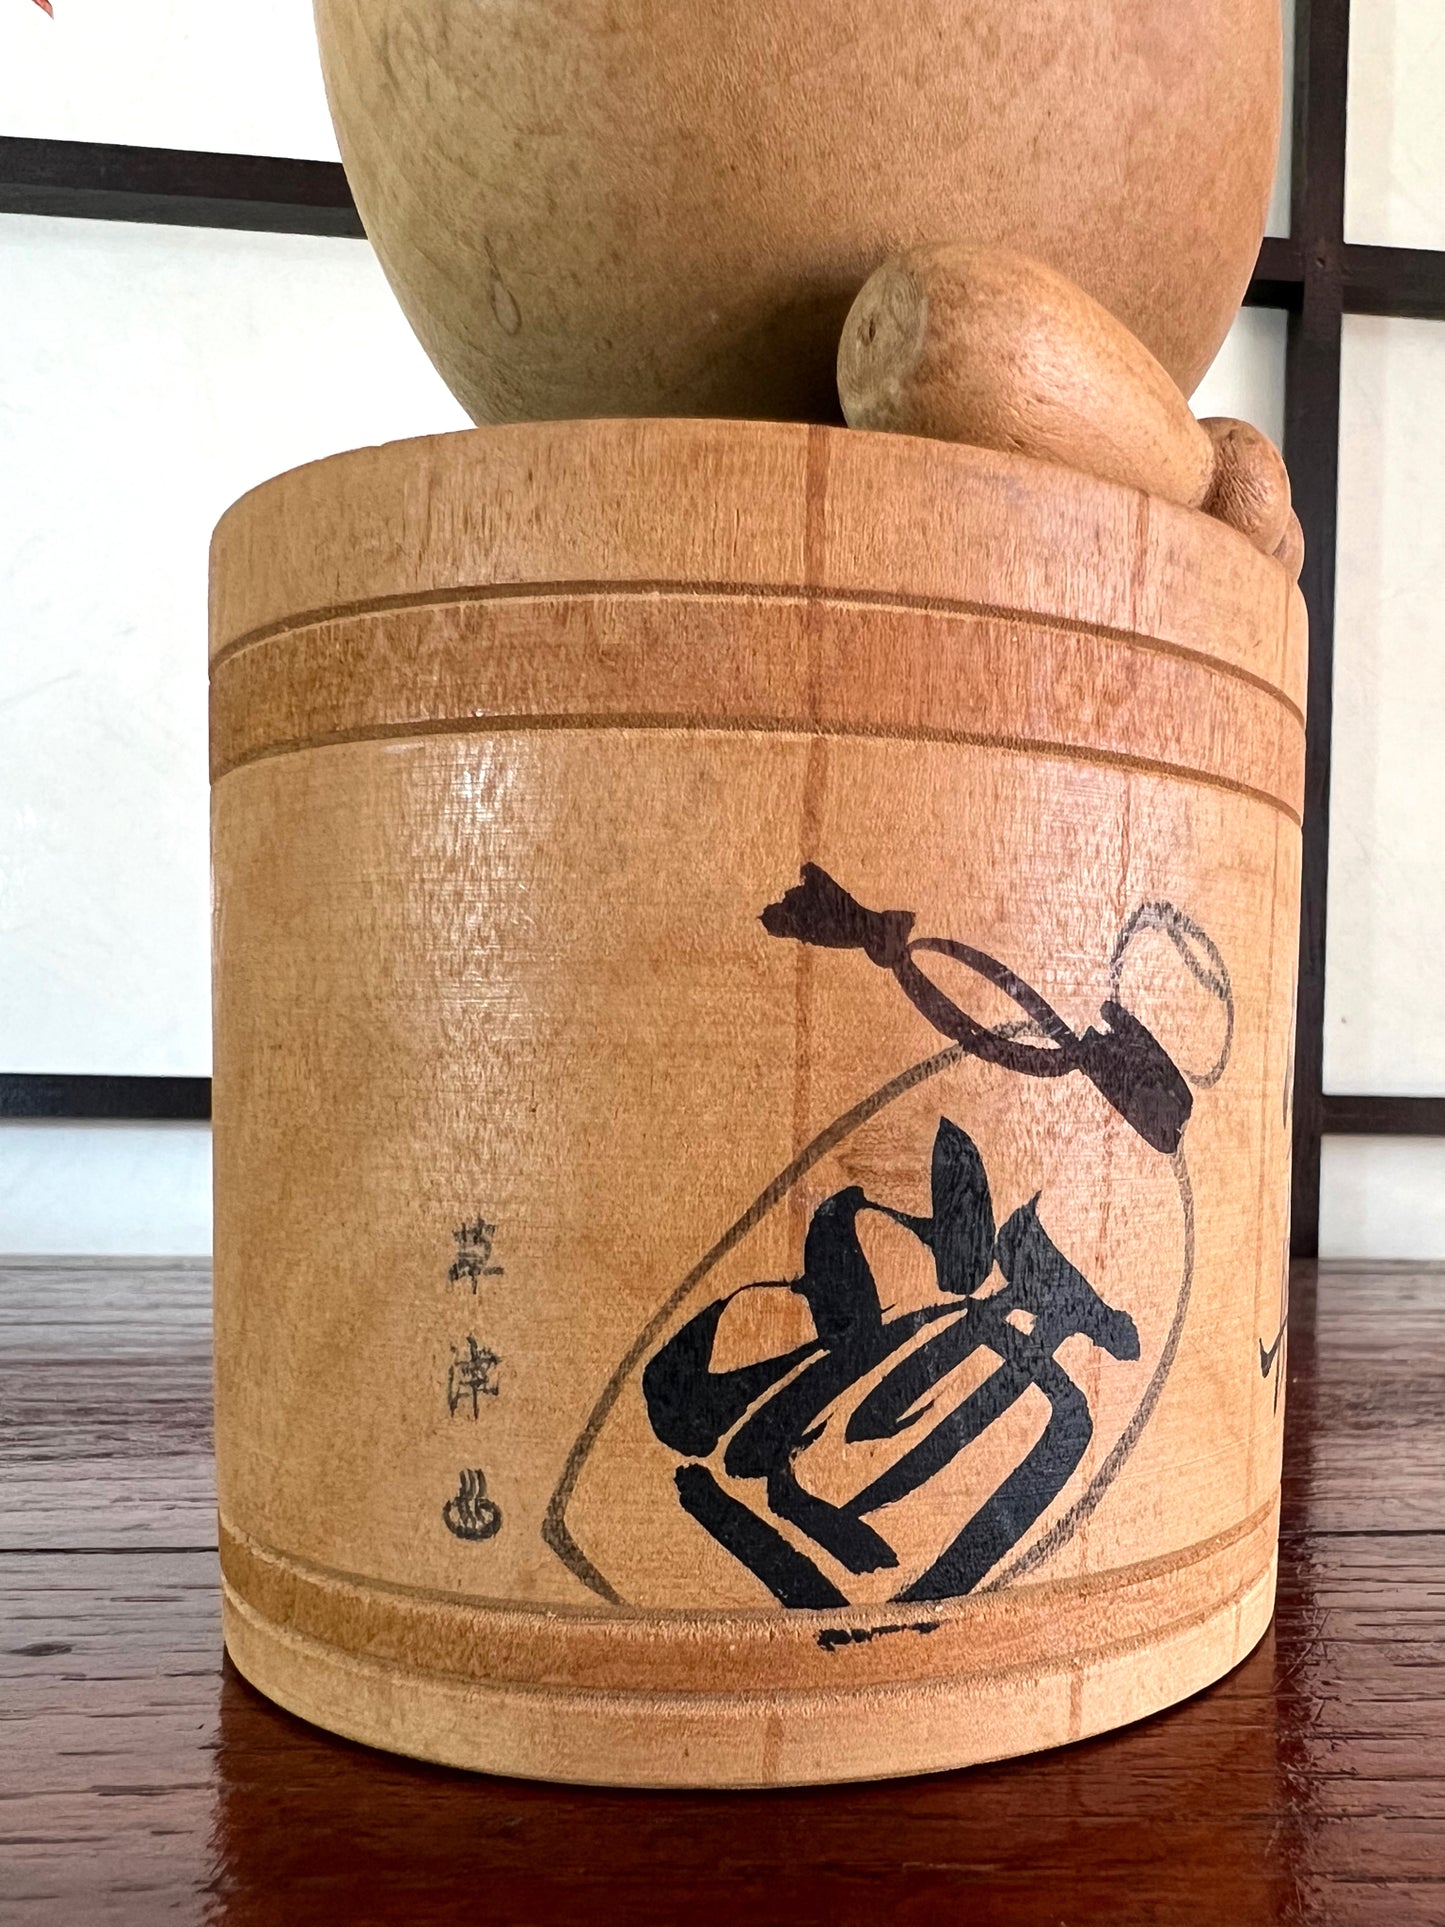 kokeshi poupée japonaise en bois dans son bain, bouteille de sake